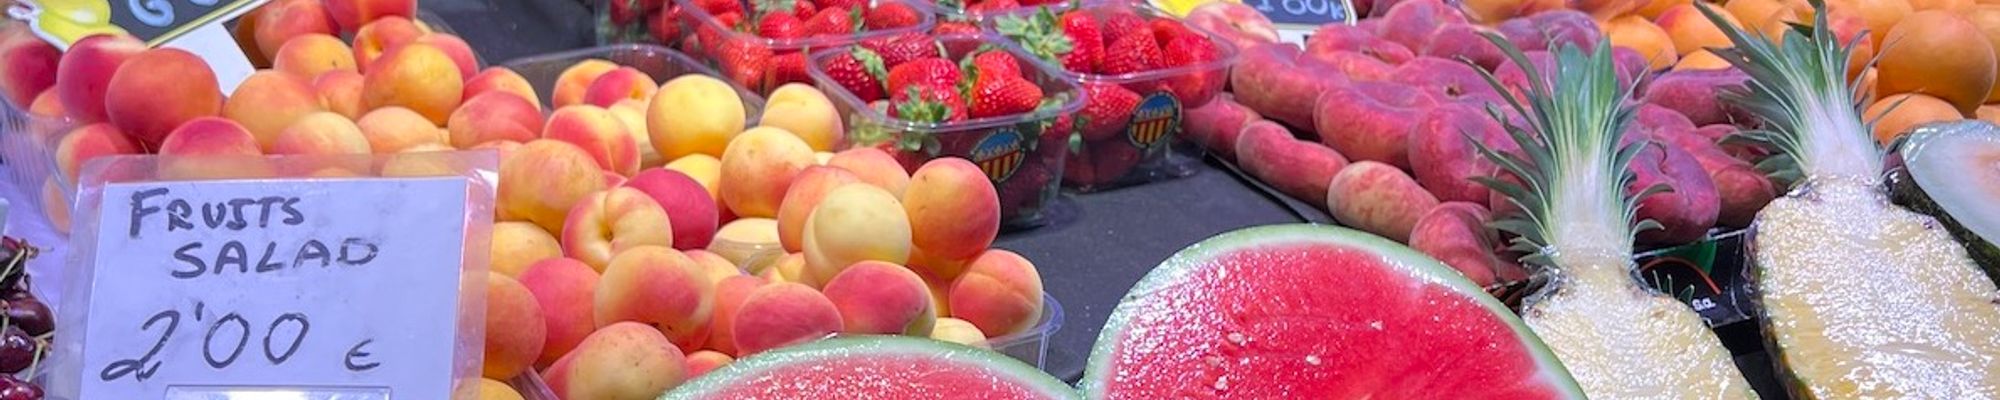 Rozkrojený melón z trhu či obľúbené freshe a ovocie. Ak nechceš skončiť s problémami, sleduj naše tipy